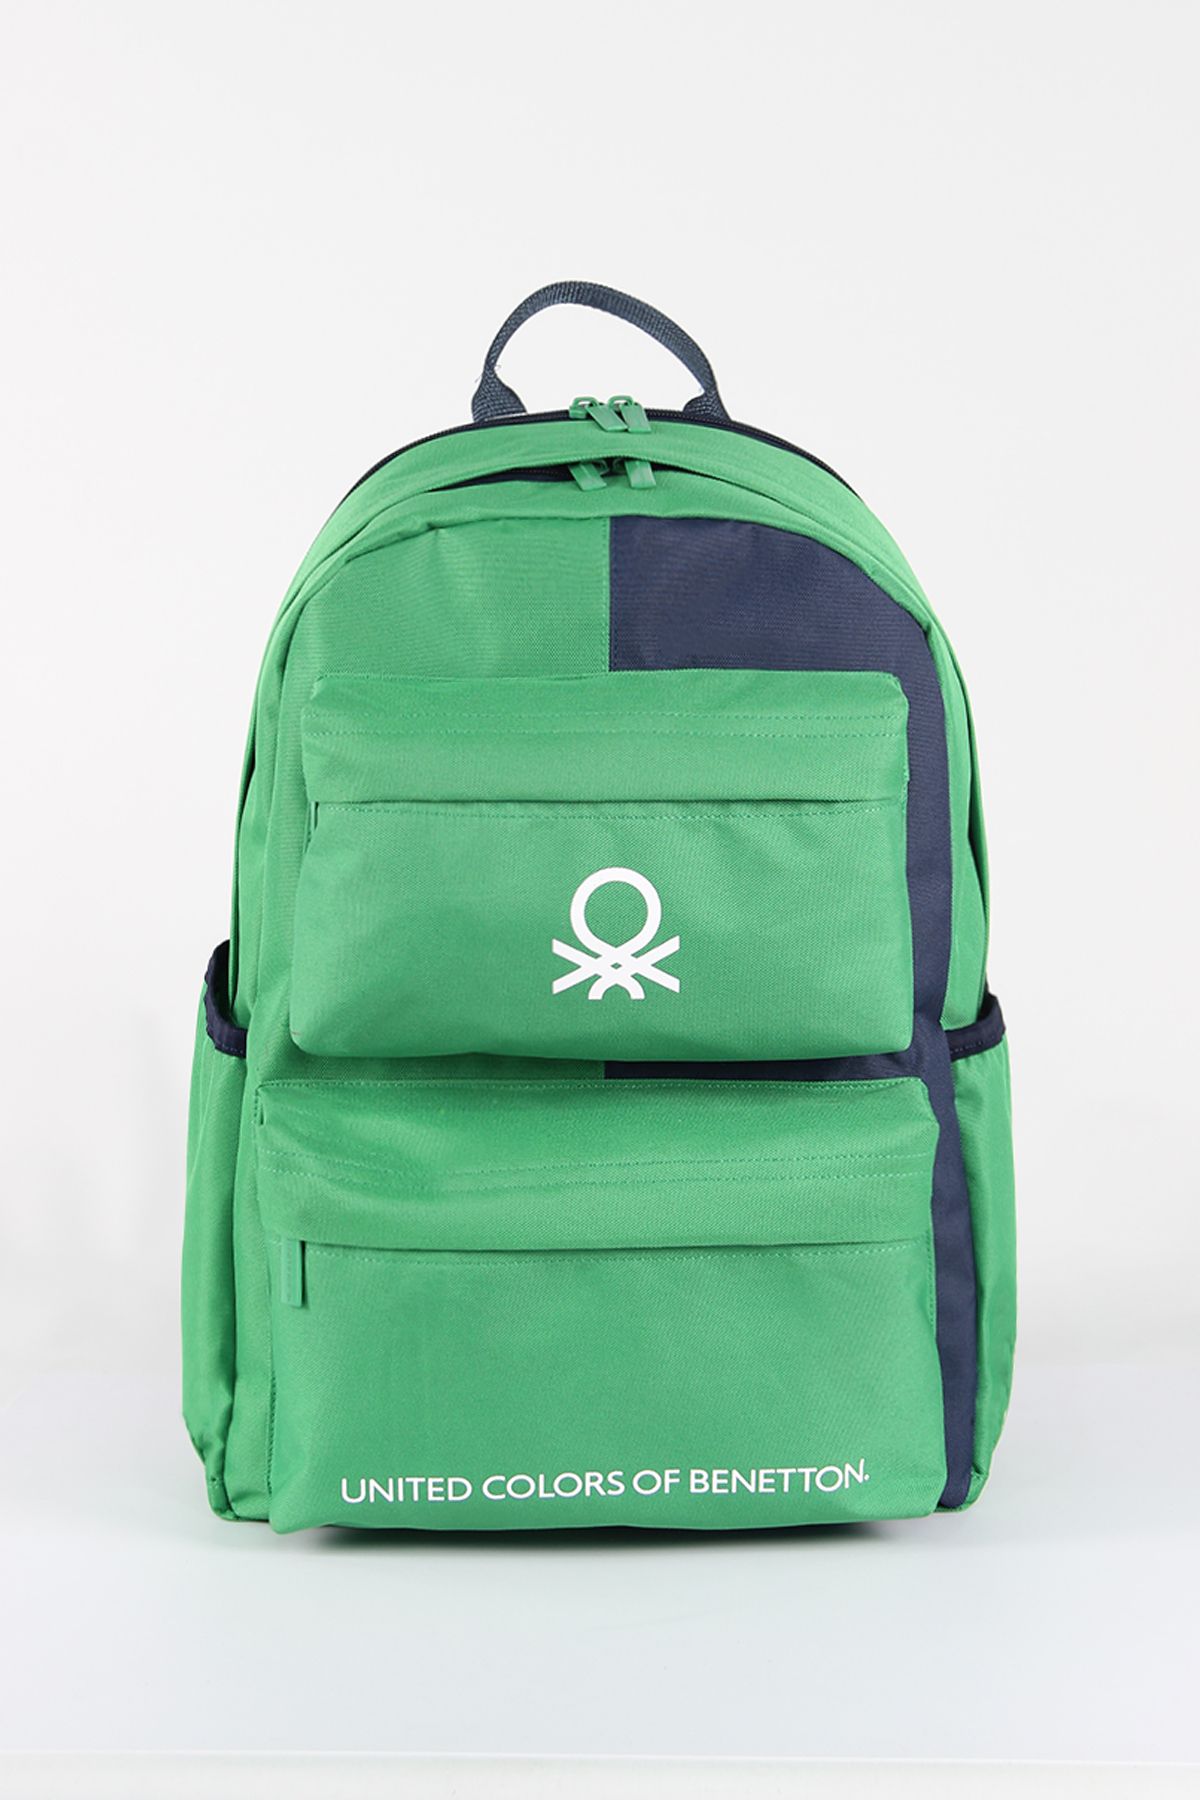 United Colors of Benetton 03848 Okul çantası ortaokul lise ilkokul öğrenci çantası üniversite YEŞİL